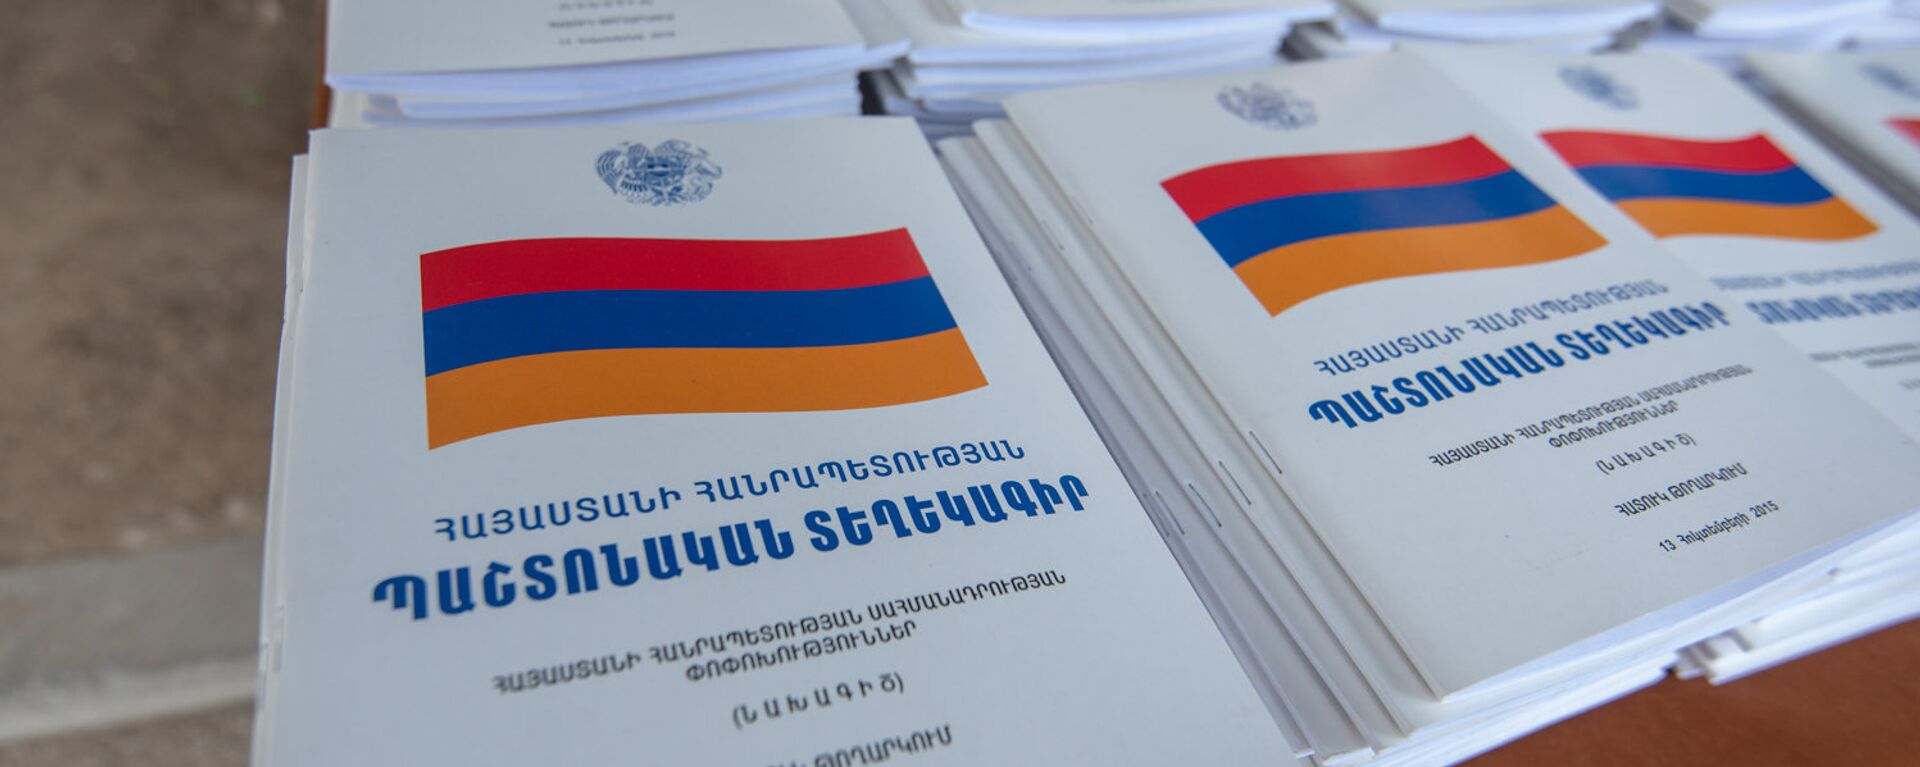 Брошюры проекта изменений Конституции Республики Армения - Sputnik Армения, 1920, 18.08.2021